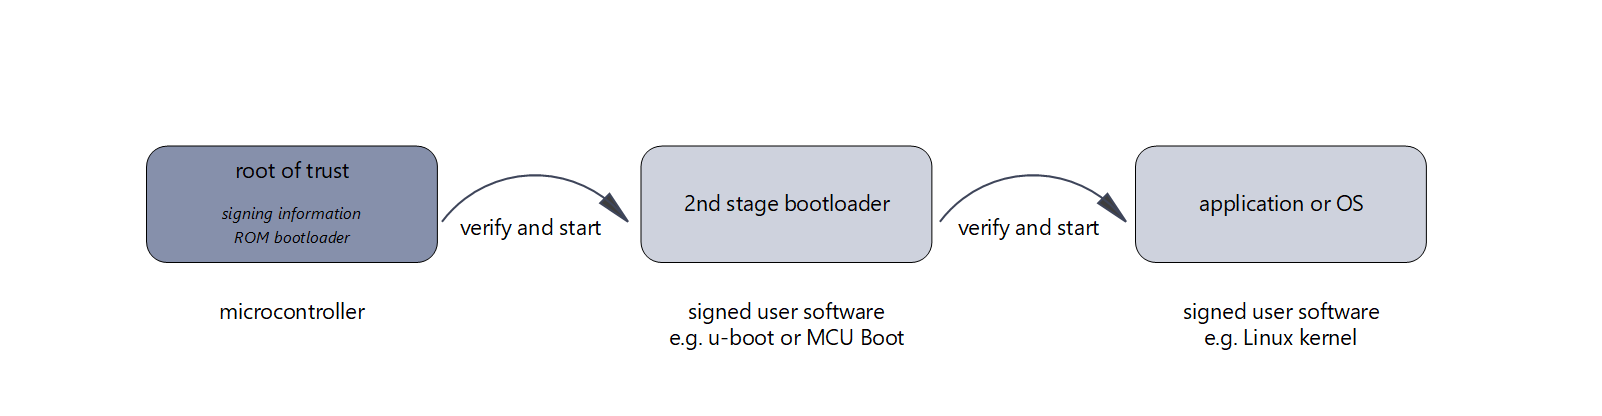 Darstellung der Secure Boot Kette von Root of Trust bis Applikation